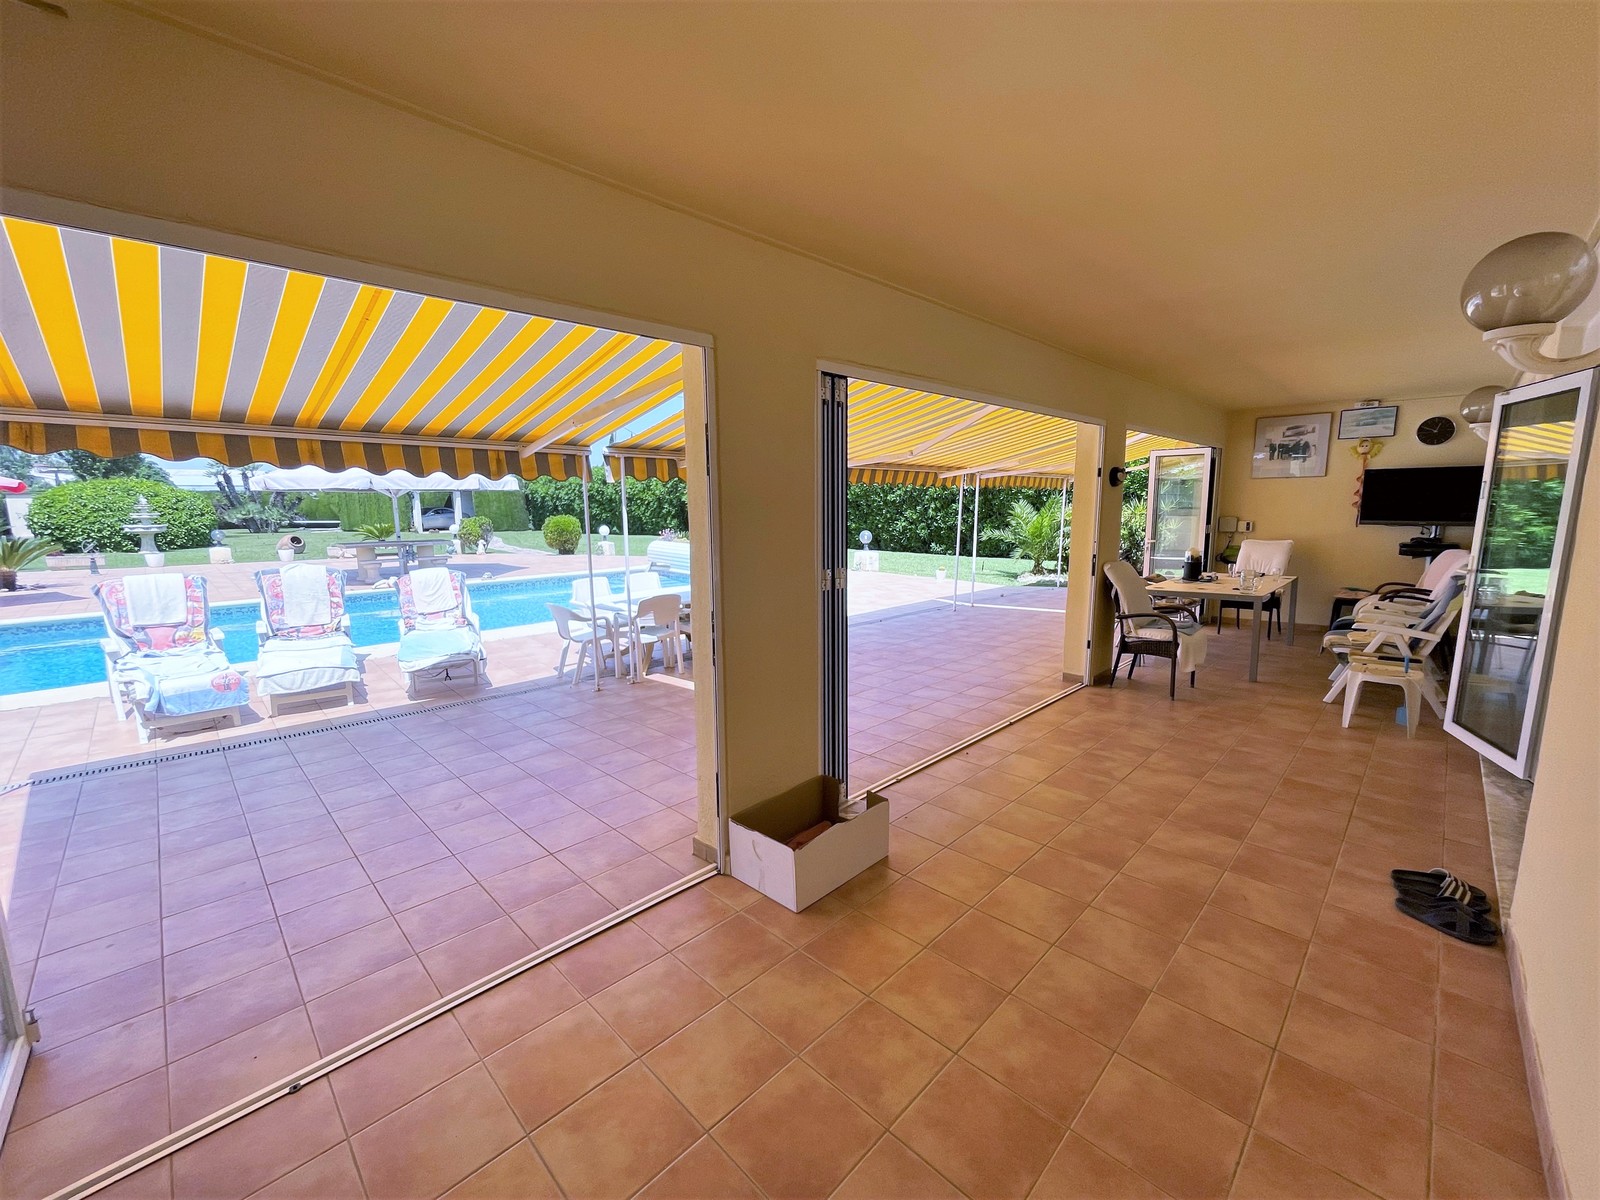 Belle villa de plain-pied avec piscine, garage, chauffage et 2 unités d'habitation ! Grand terrain ! 